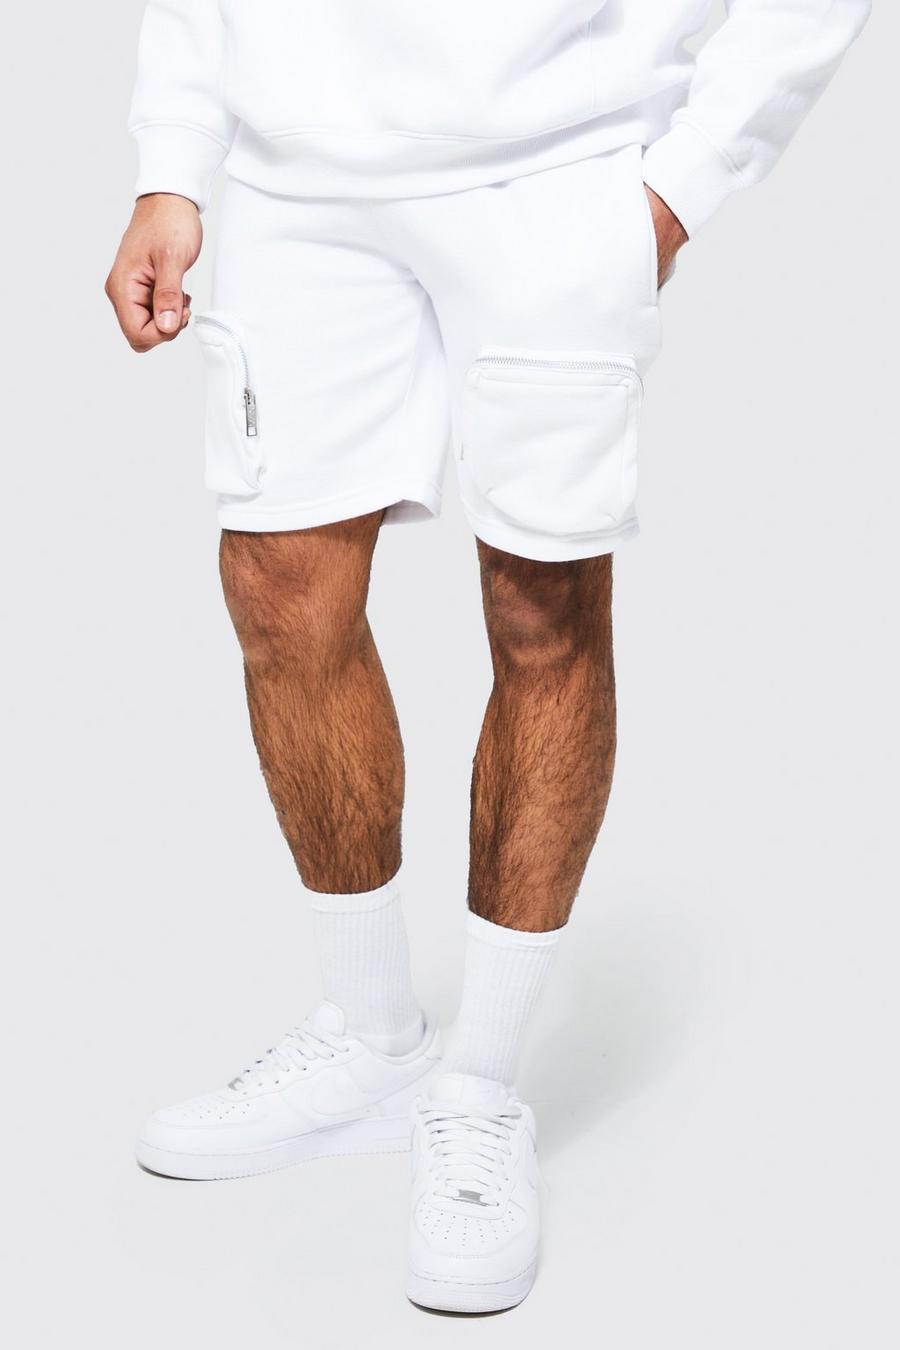 Lockere recycelte Cargo Jersey-Shorts mit Reißverschluss, White blanc